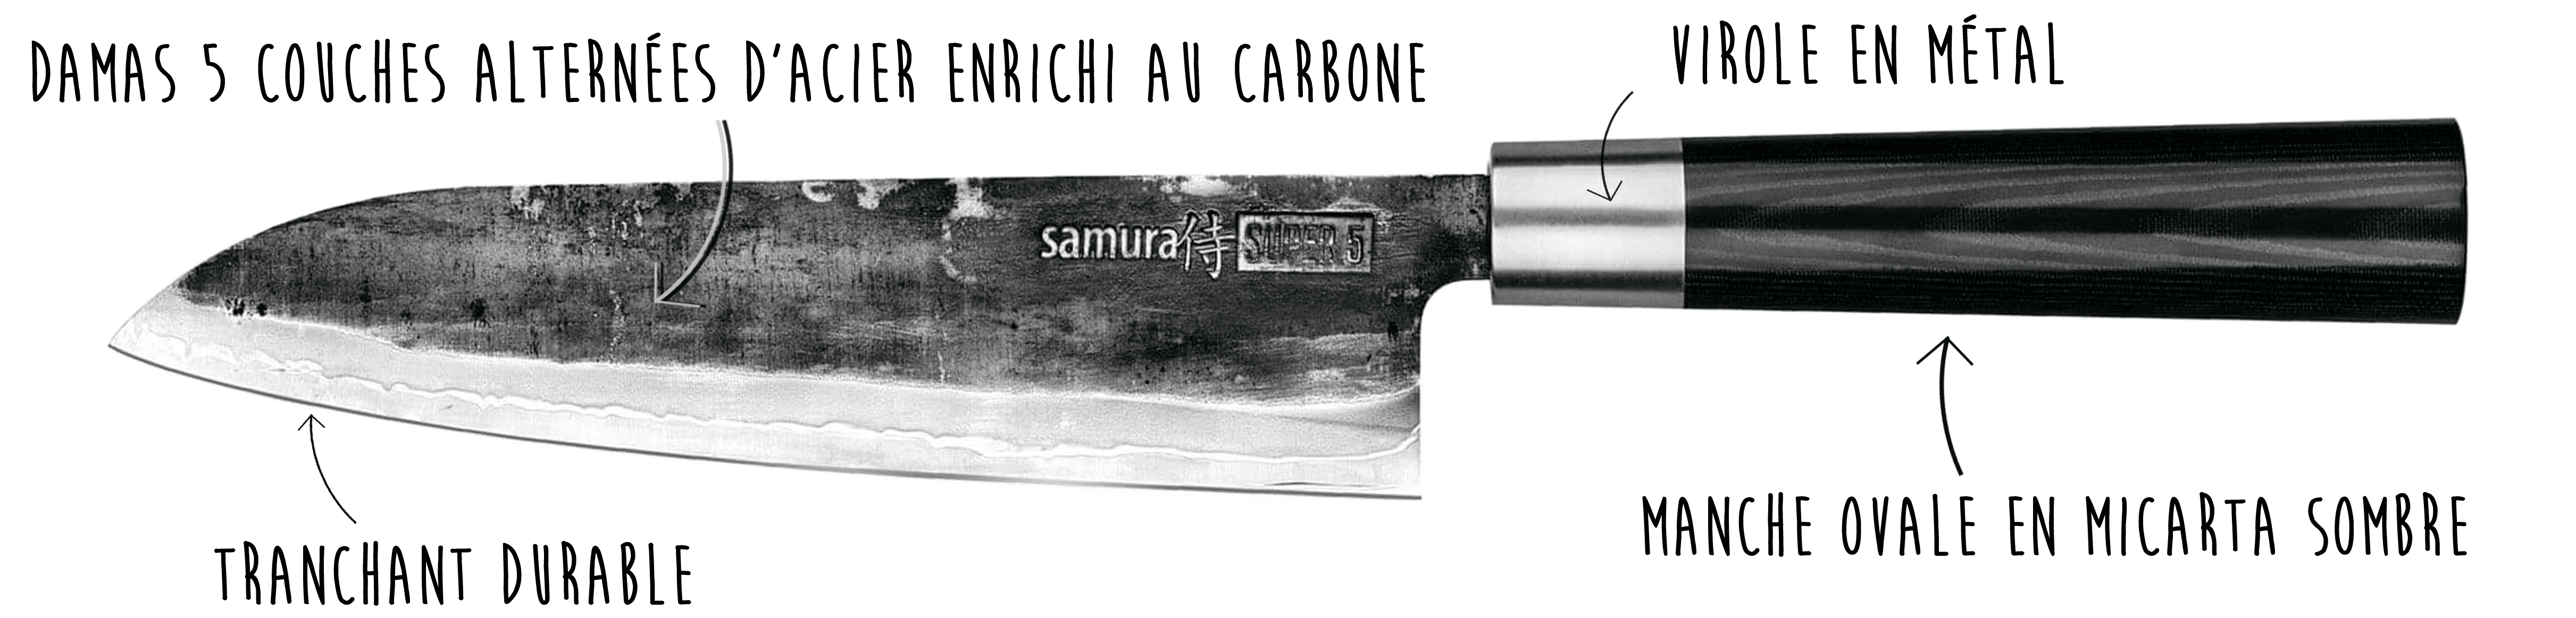 Découvrez le couteau Samura ici